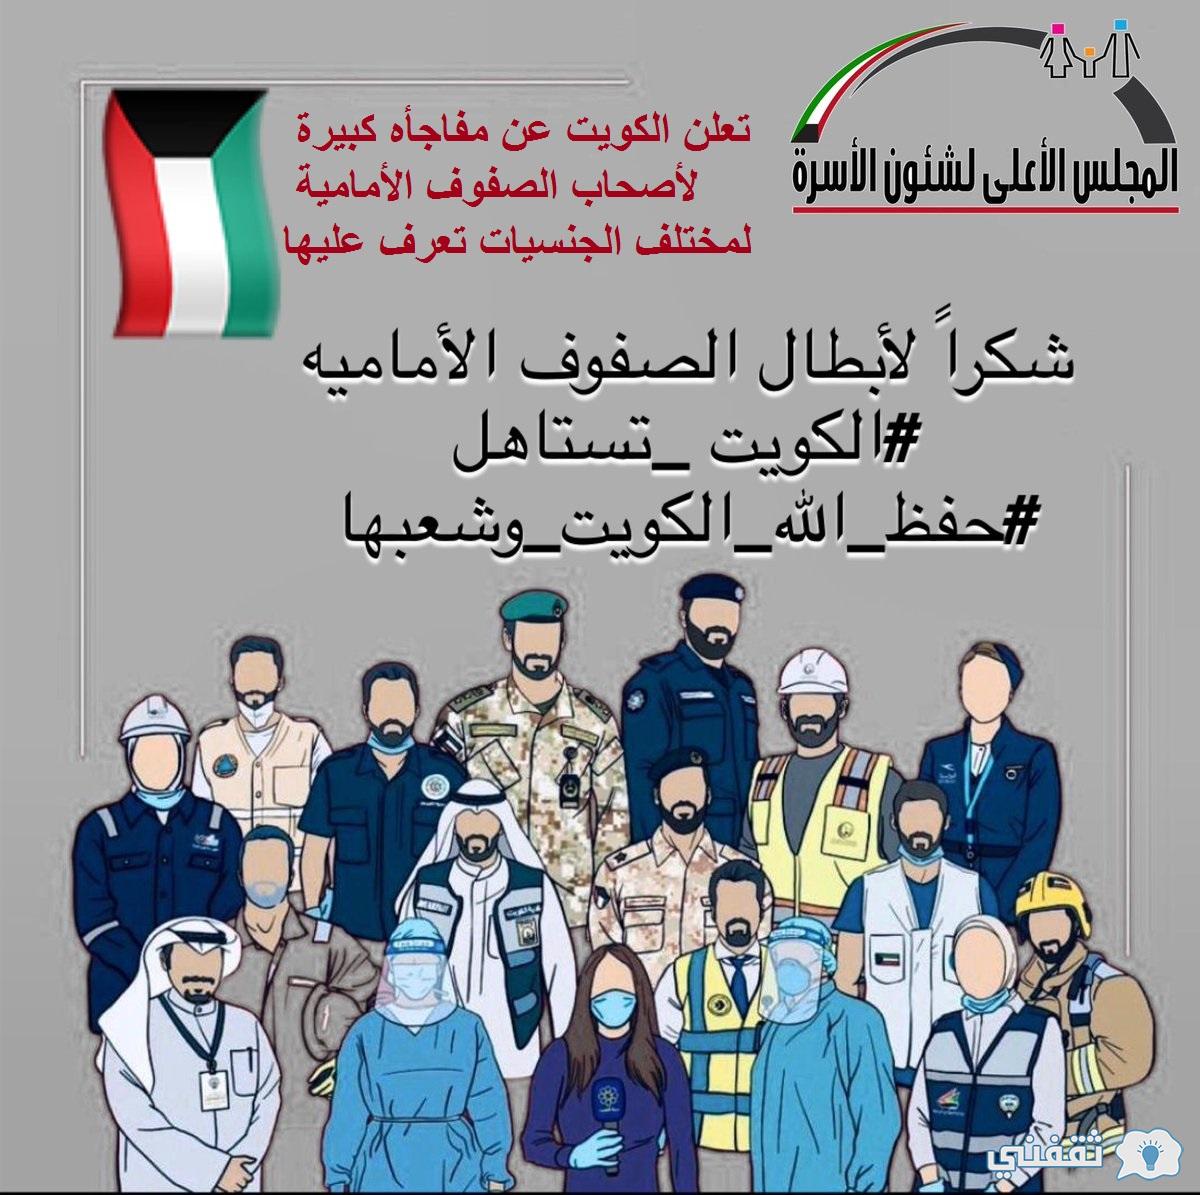 مفاجأة الكويت تعلن عن البدء في توزيع حصص تموينية مجانية لمدة 6 أشهر تعرف من هم المستحقين لها